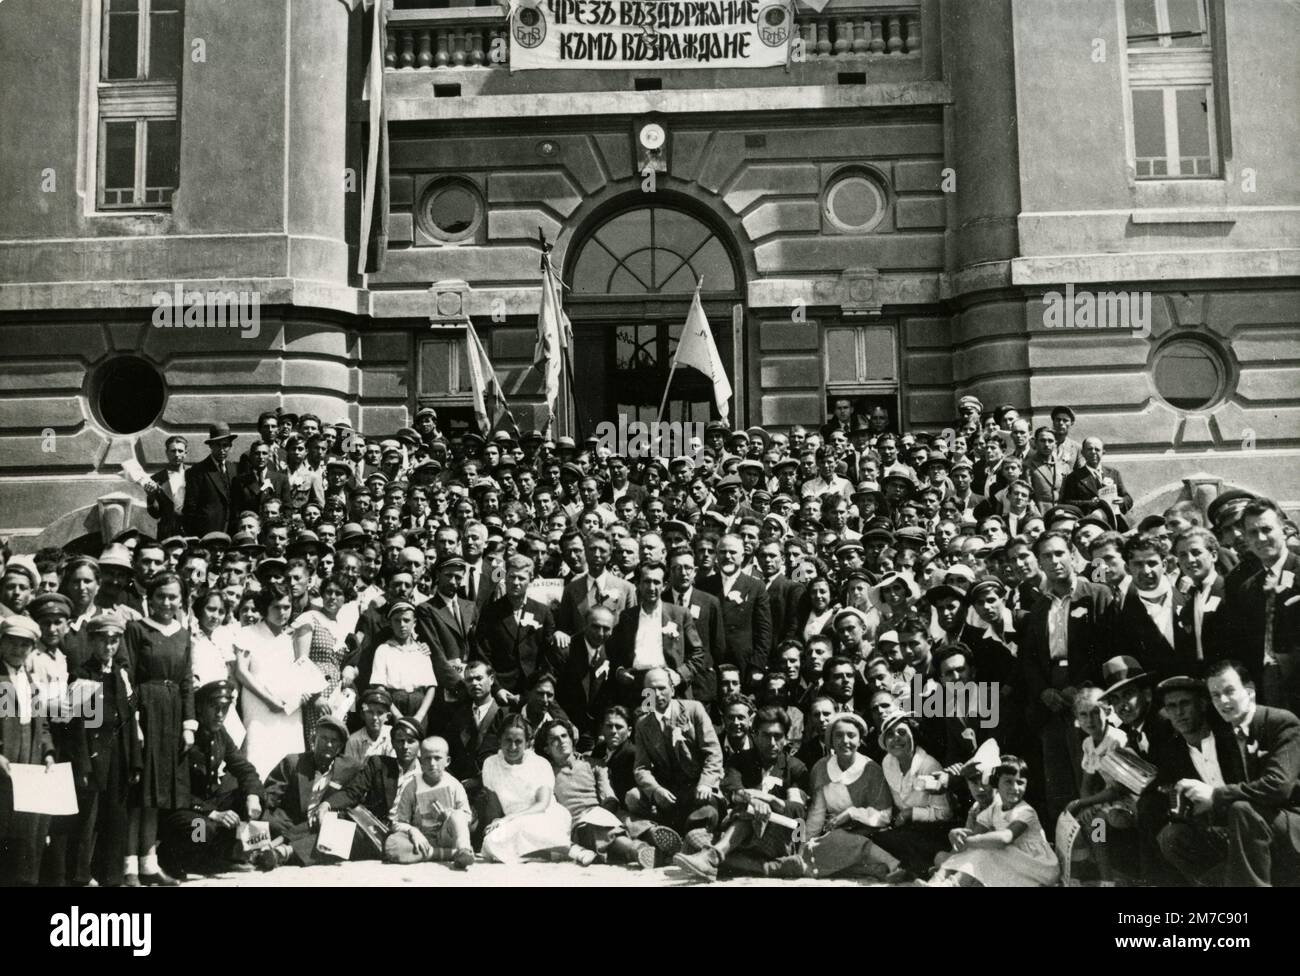 Große Gruppe von Menschen mit dem Zeichen DES WIDERSTANDS GEGEN DIE WIEDERBELEBUNG, Bulgarien, 1920er Stockfoto